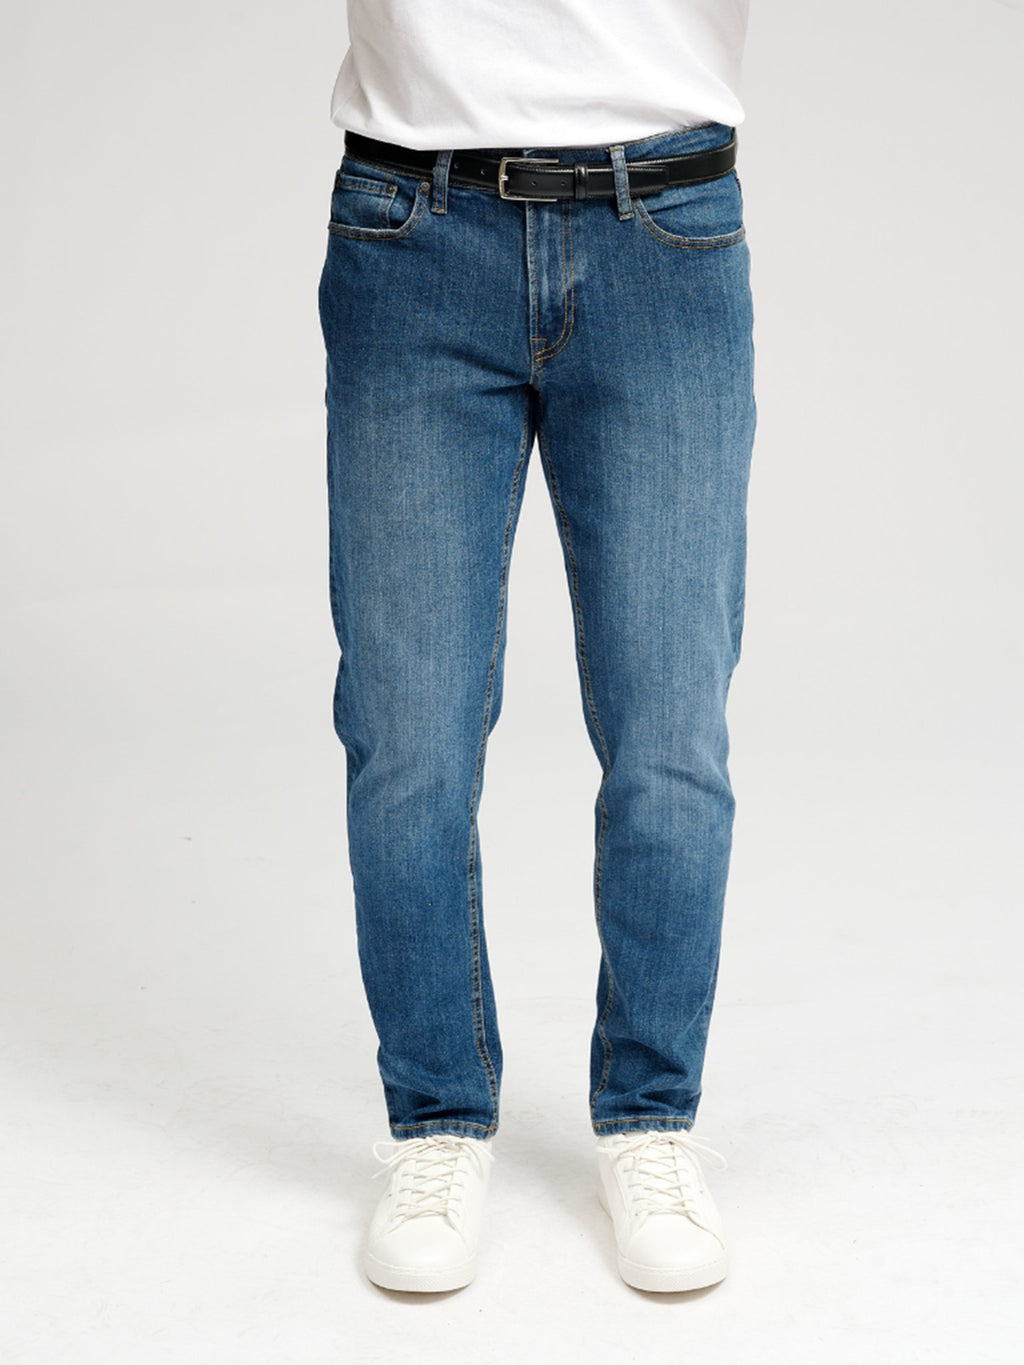 The Original Performance Jeans (regolare) - denim blu medio